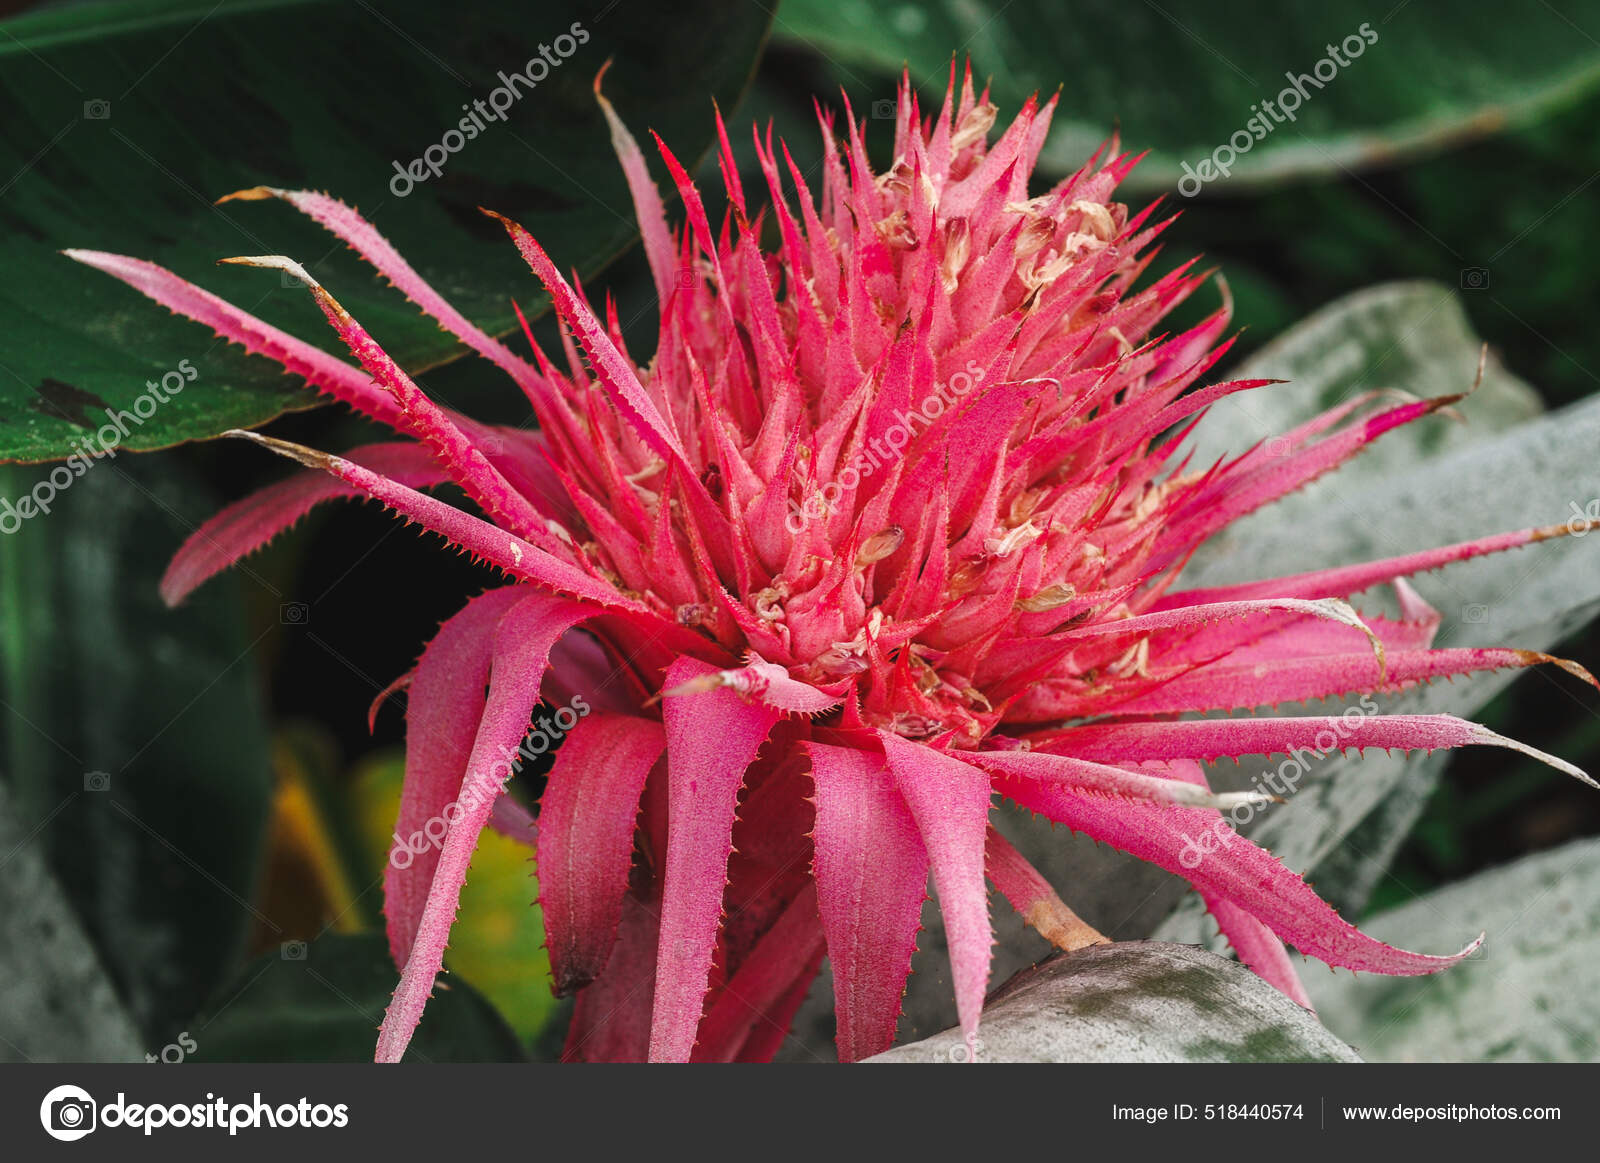 Primer Plano Flor Aechmea Jardín: fotografía de stock © Wirestock  #518440574 | Depositphotos